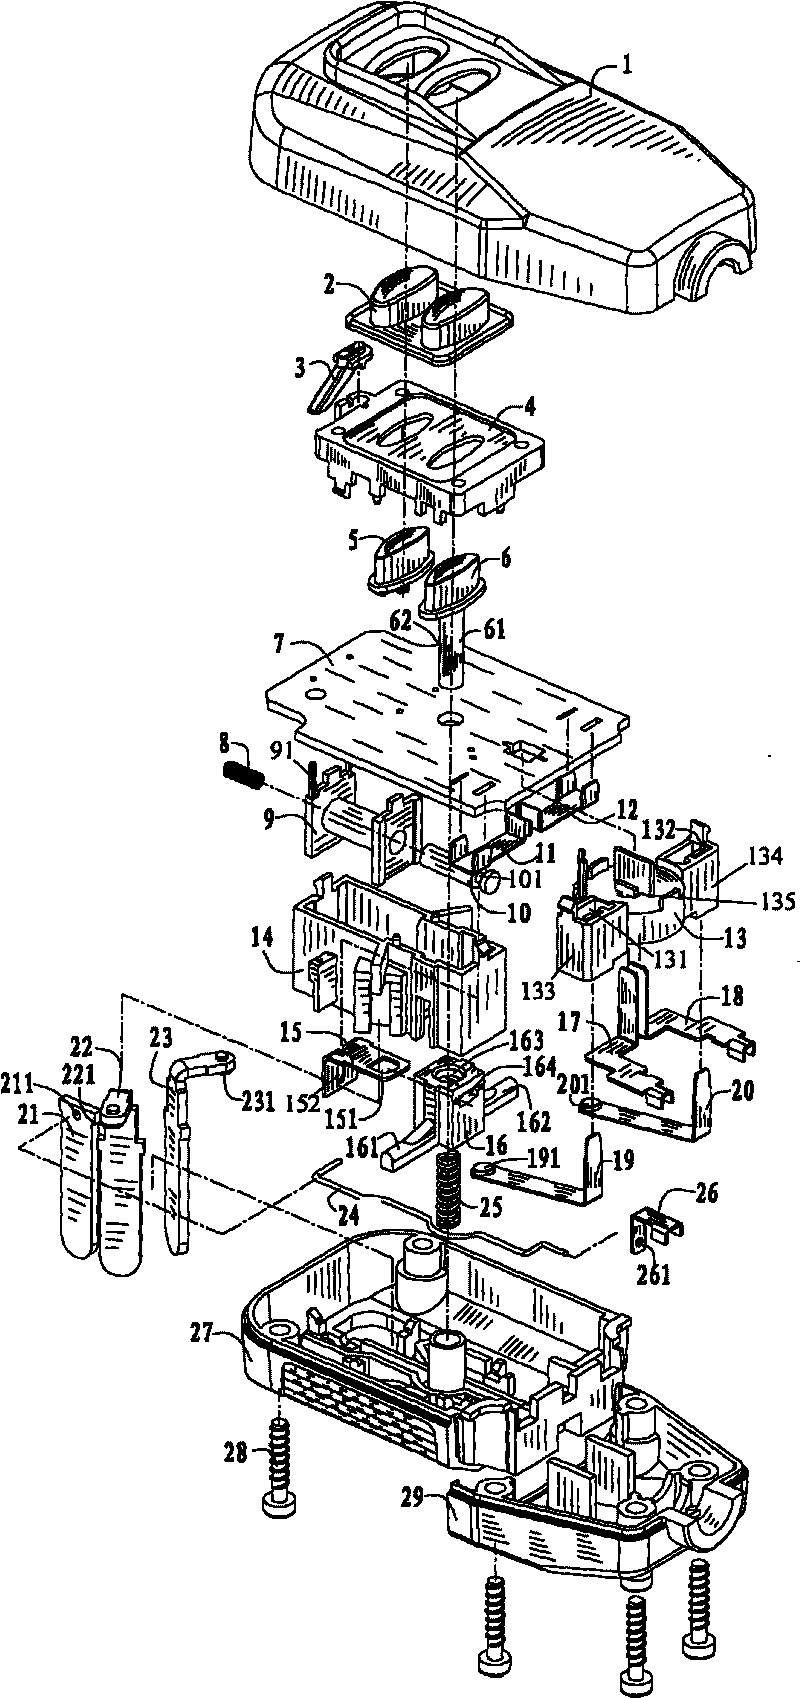 Leakage circuit breaker